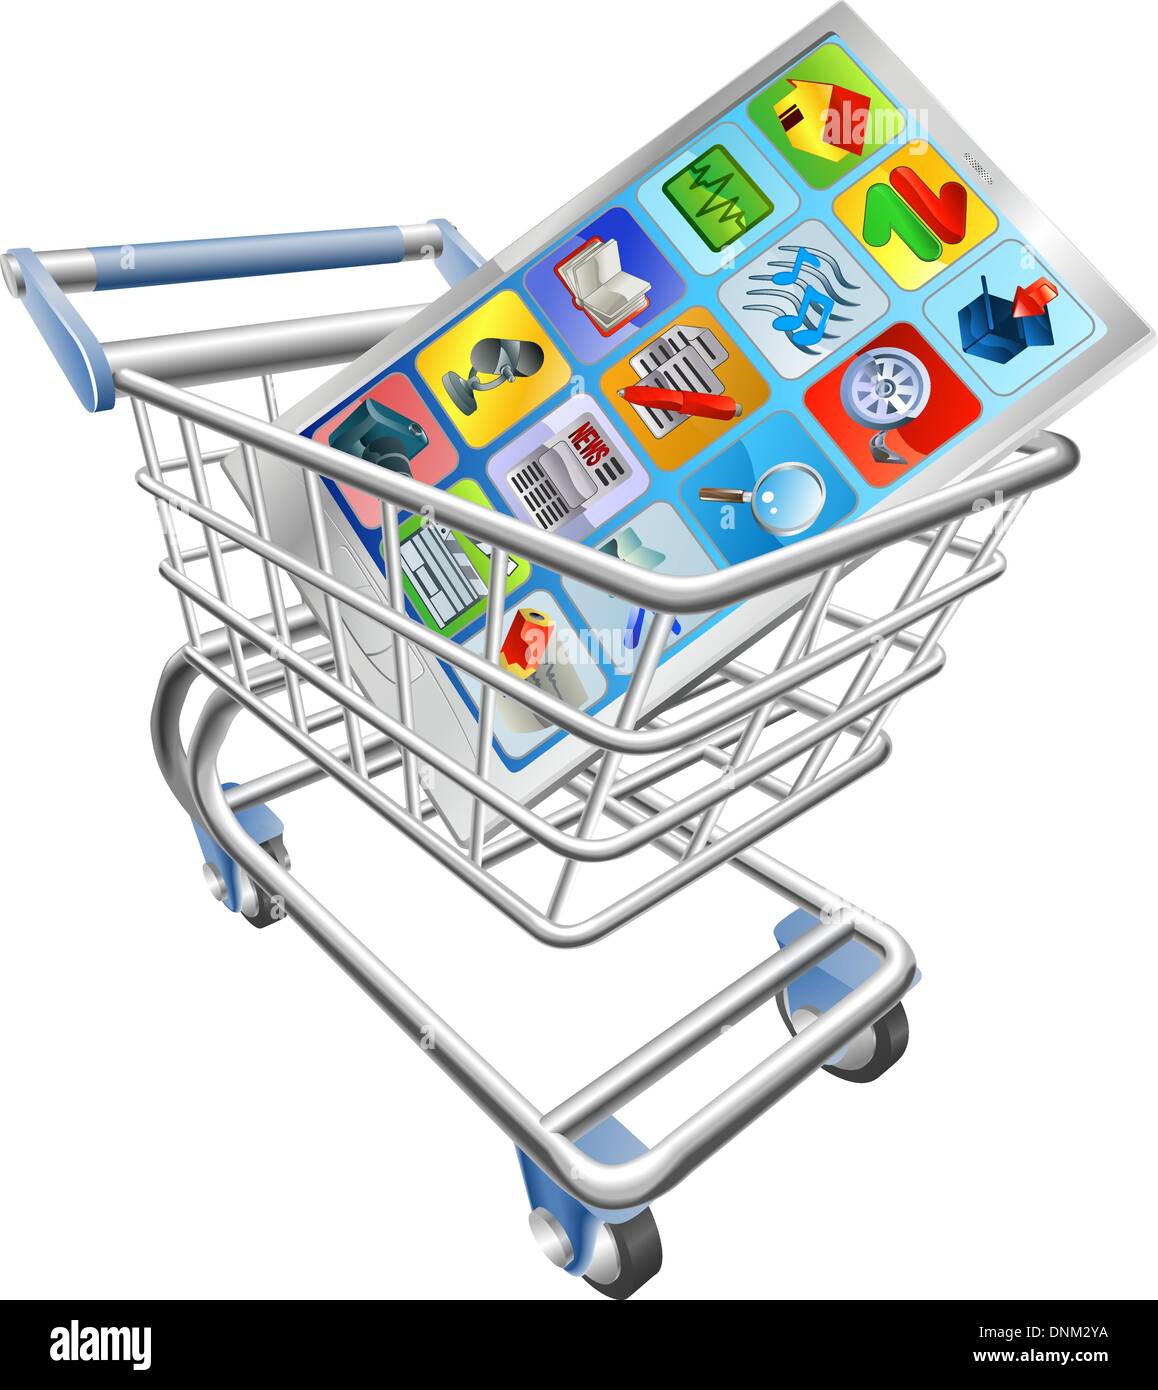 Una illustrazione di un mobile smart phone o tablet PC nel carrello spesa carrello Illustrazione Vettoriale